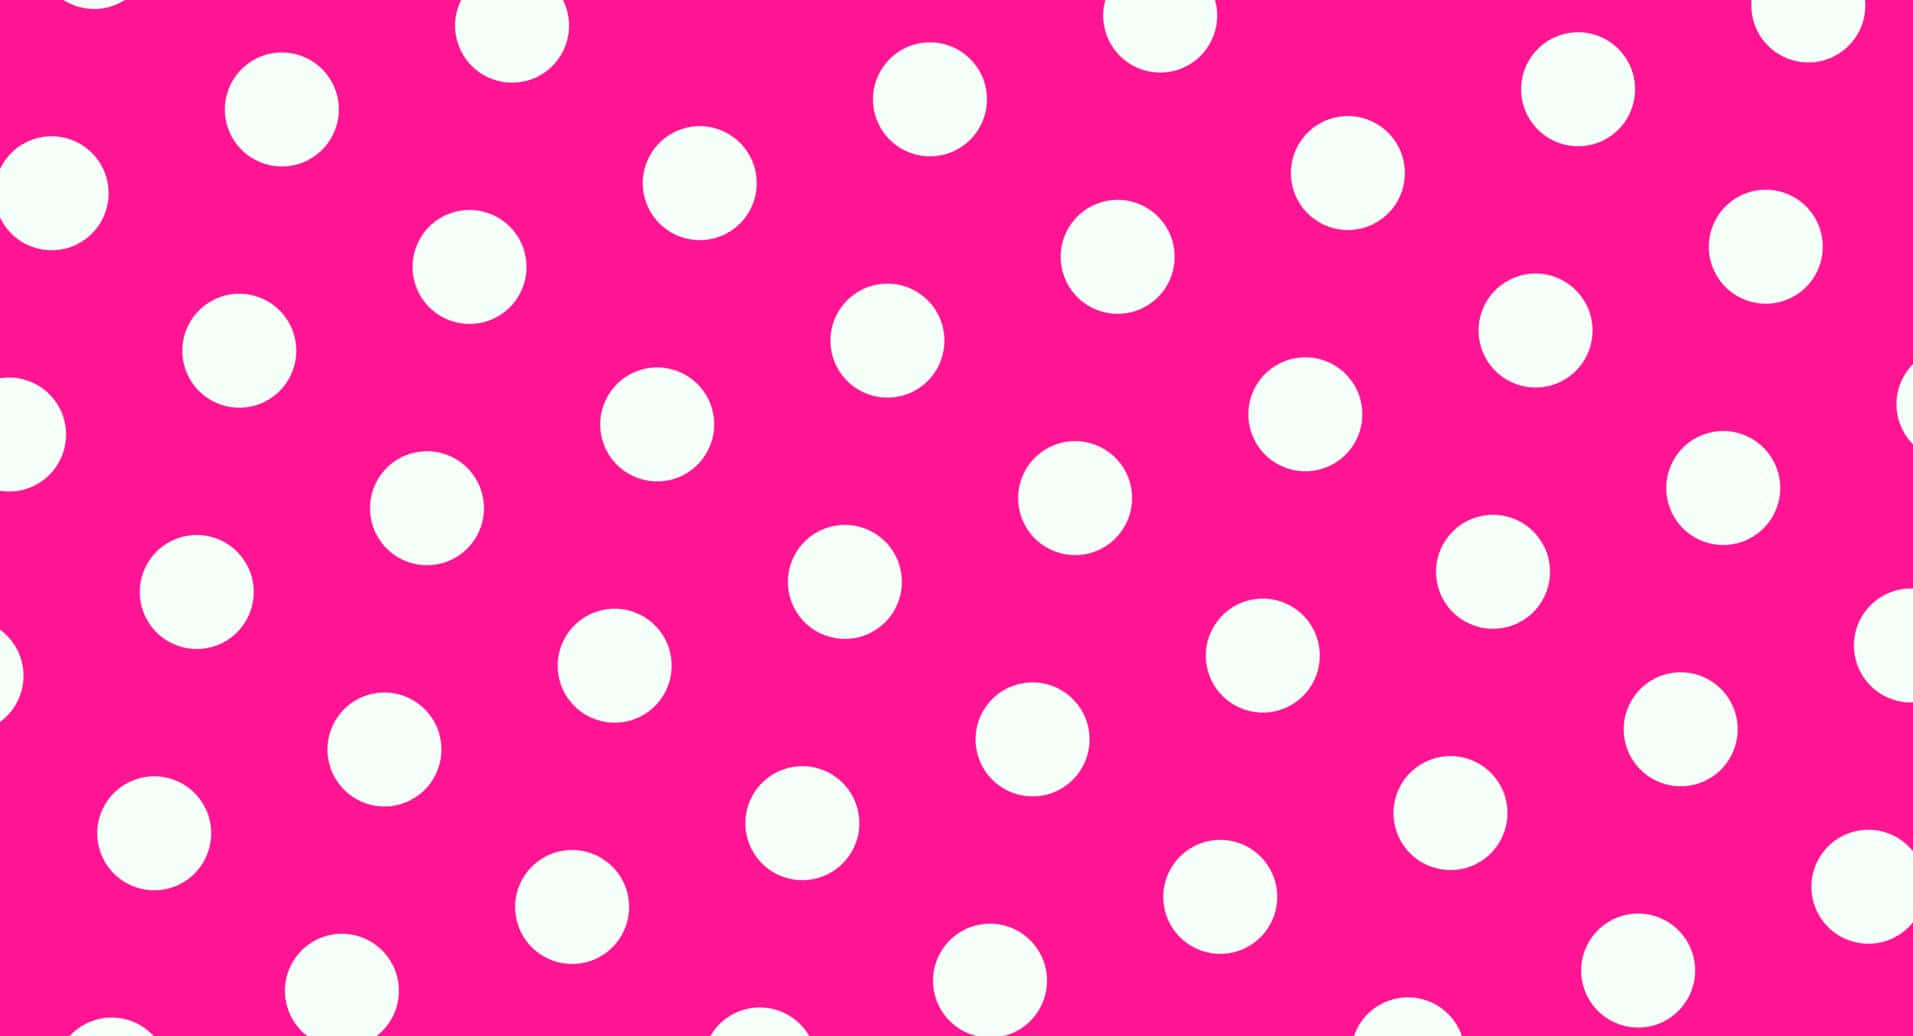 Gør dig klar til eventyret fra dine drømme med denne sjove og boblende pink og hvid polka dot mønster! Wallpaper